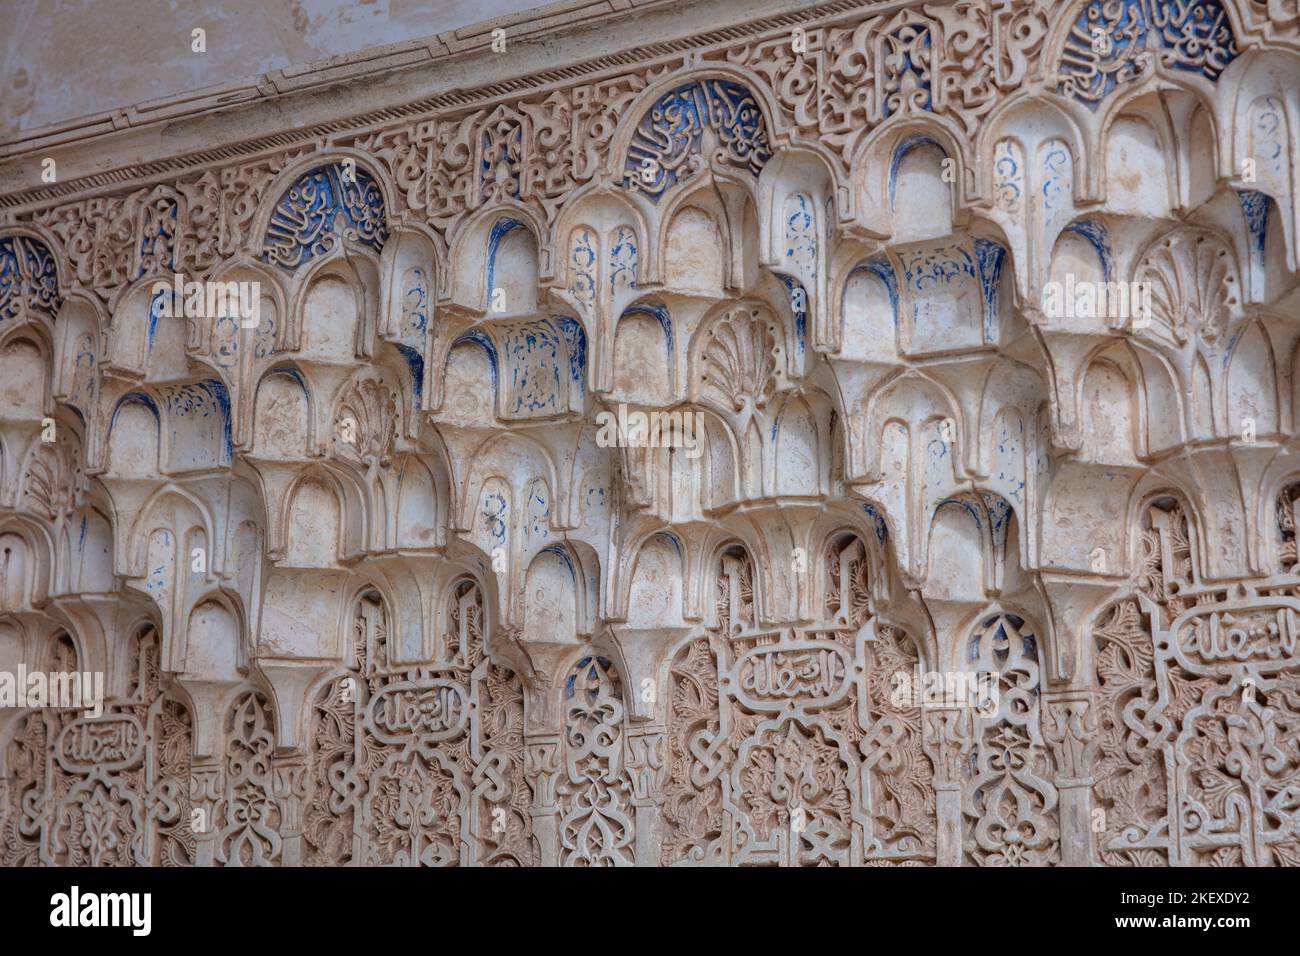 Détails architecturaux islamiques, Alhambra, Grenade, Andalousie, Espagne Banque D'Images